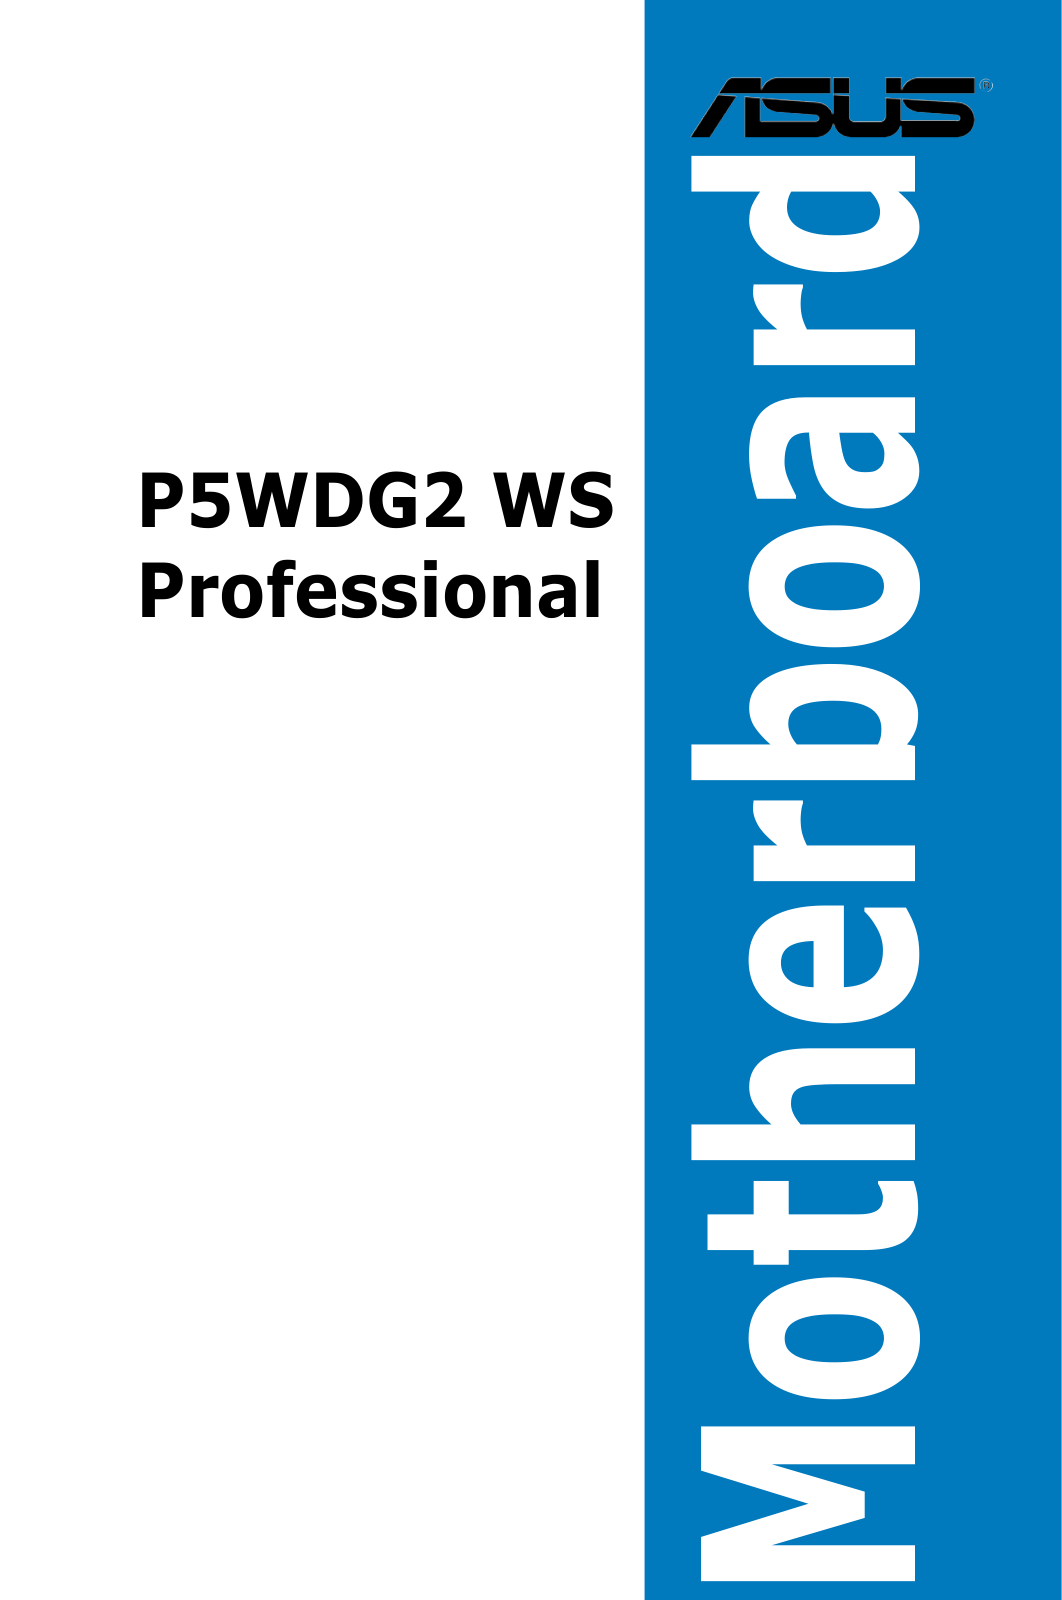 Asus P5WDG2 WS PROFESSIONAL Manual